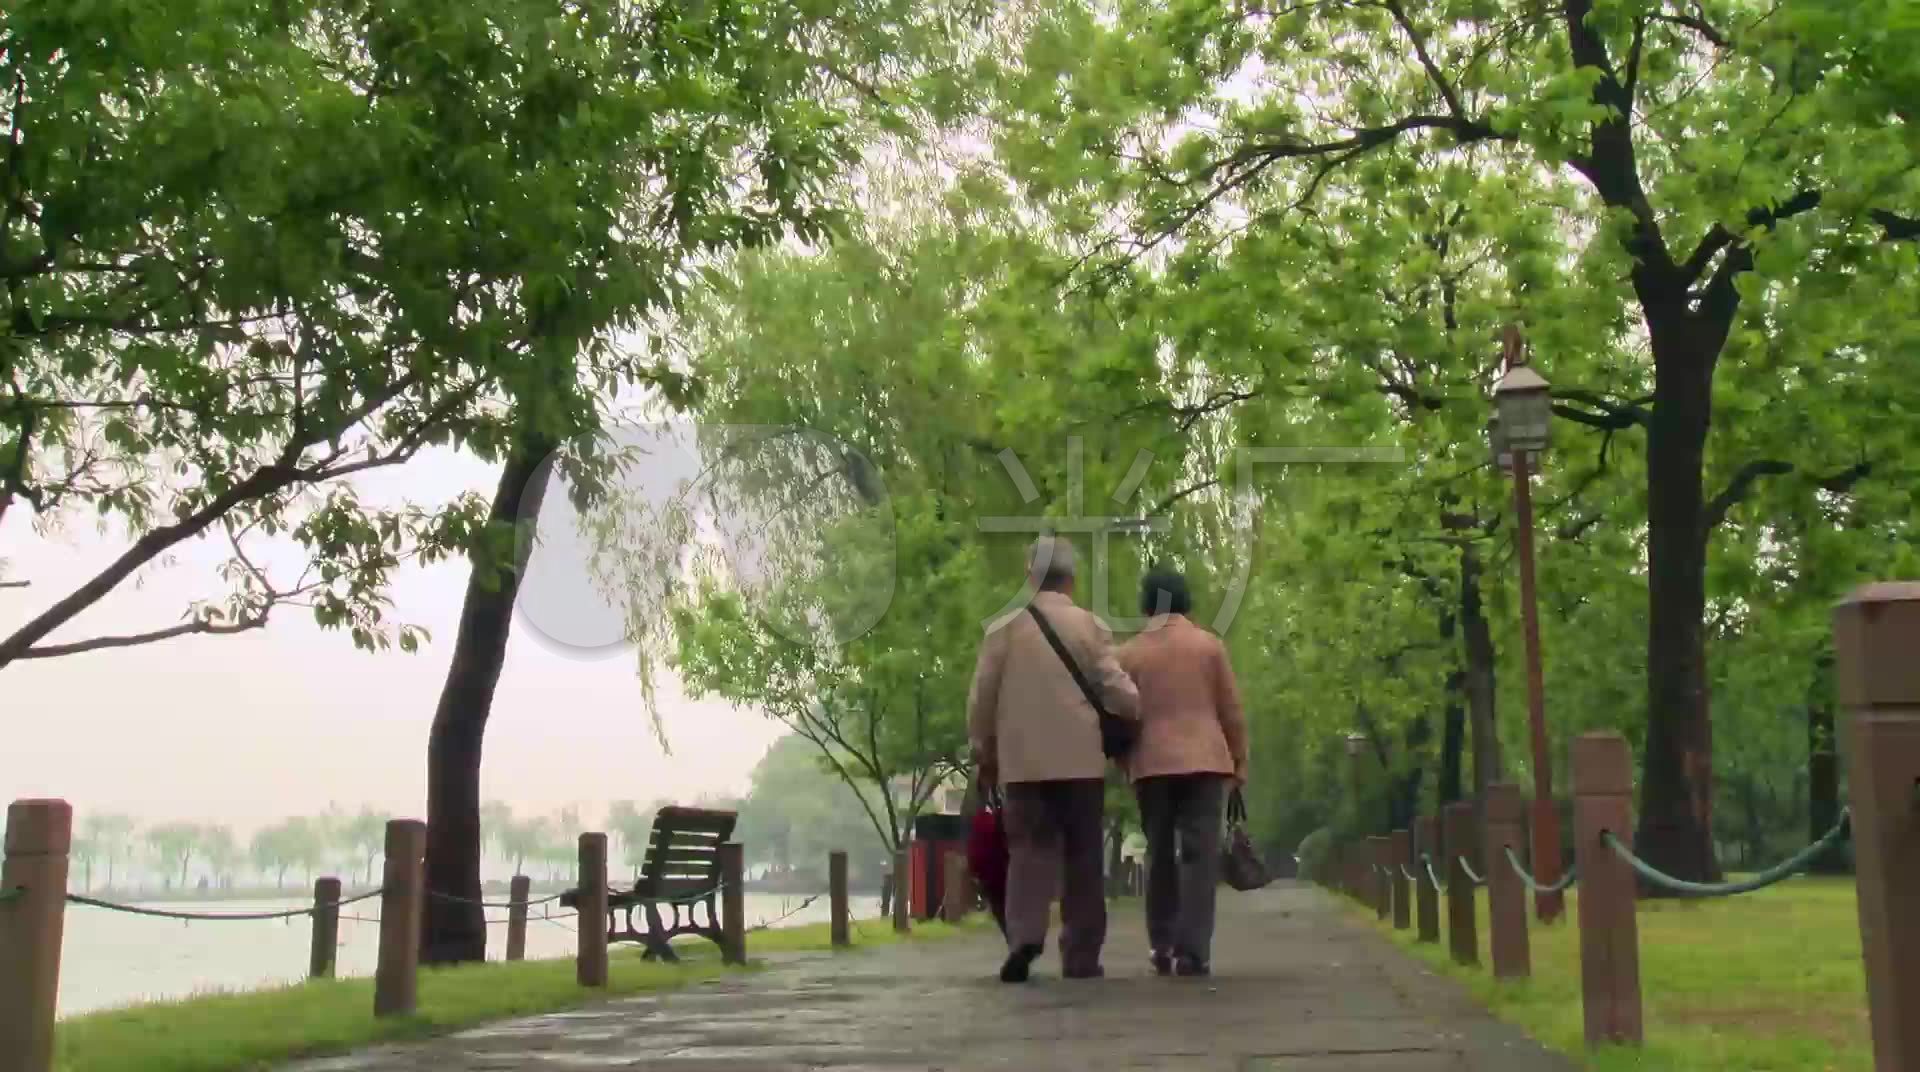 雨中同一把伞雨后相互挽扶着的老夫妻背影